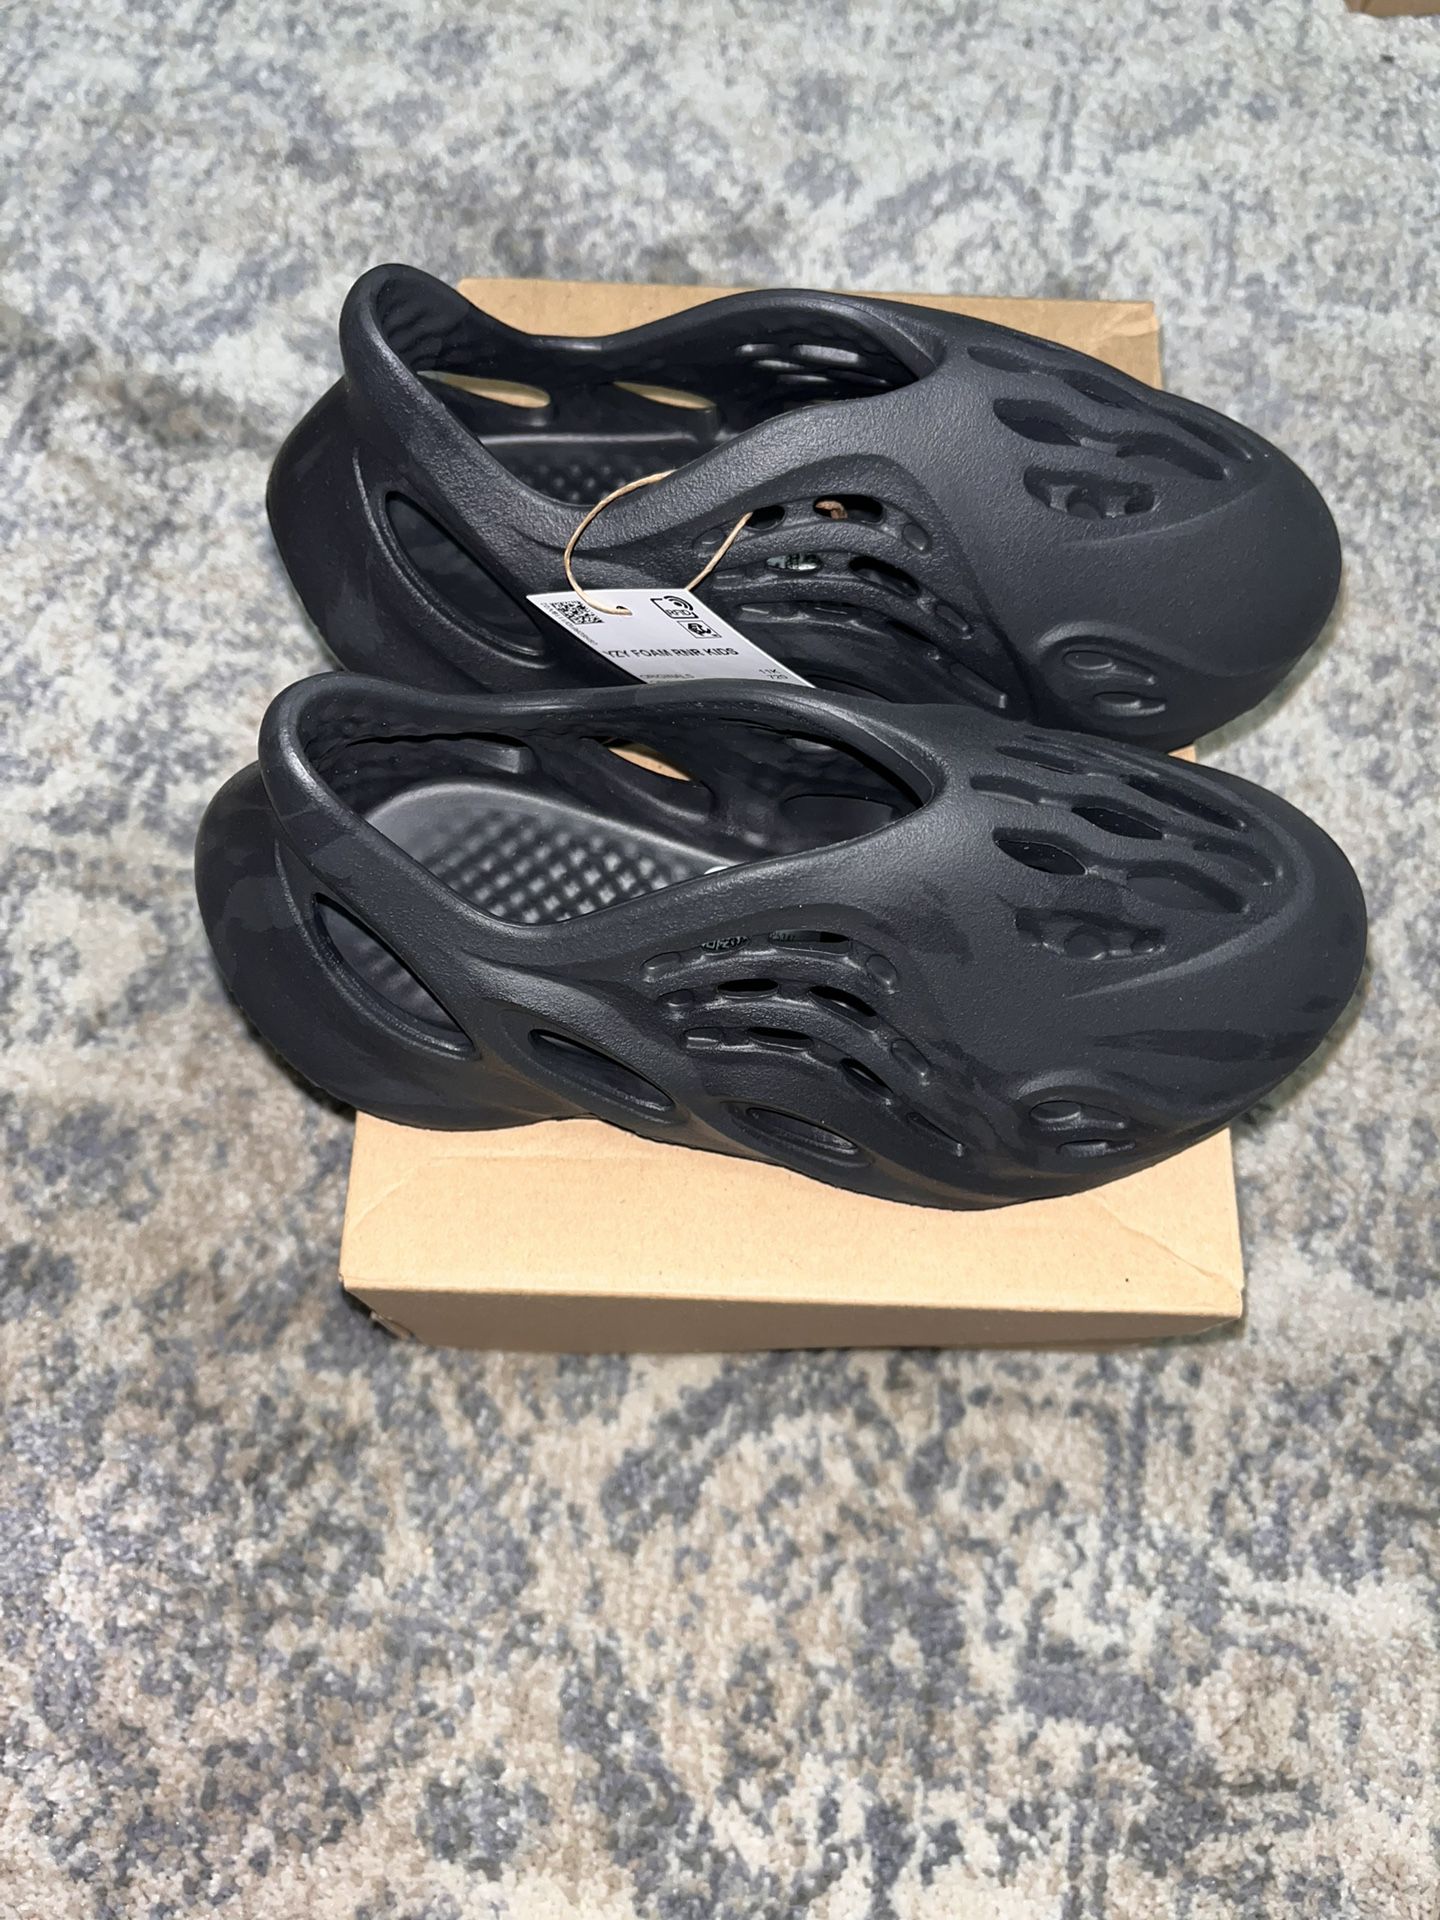 Adidas Yeezy foam Runner “onyx” In Size 7men